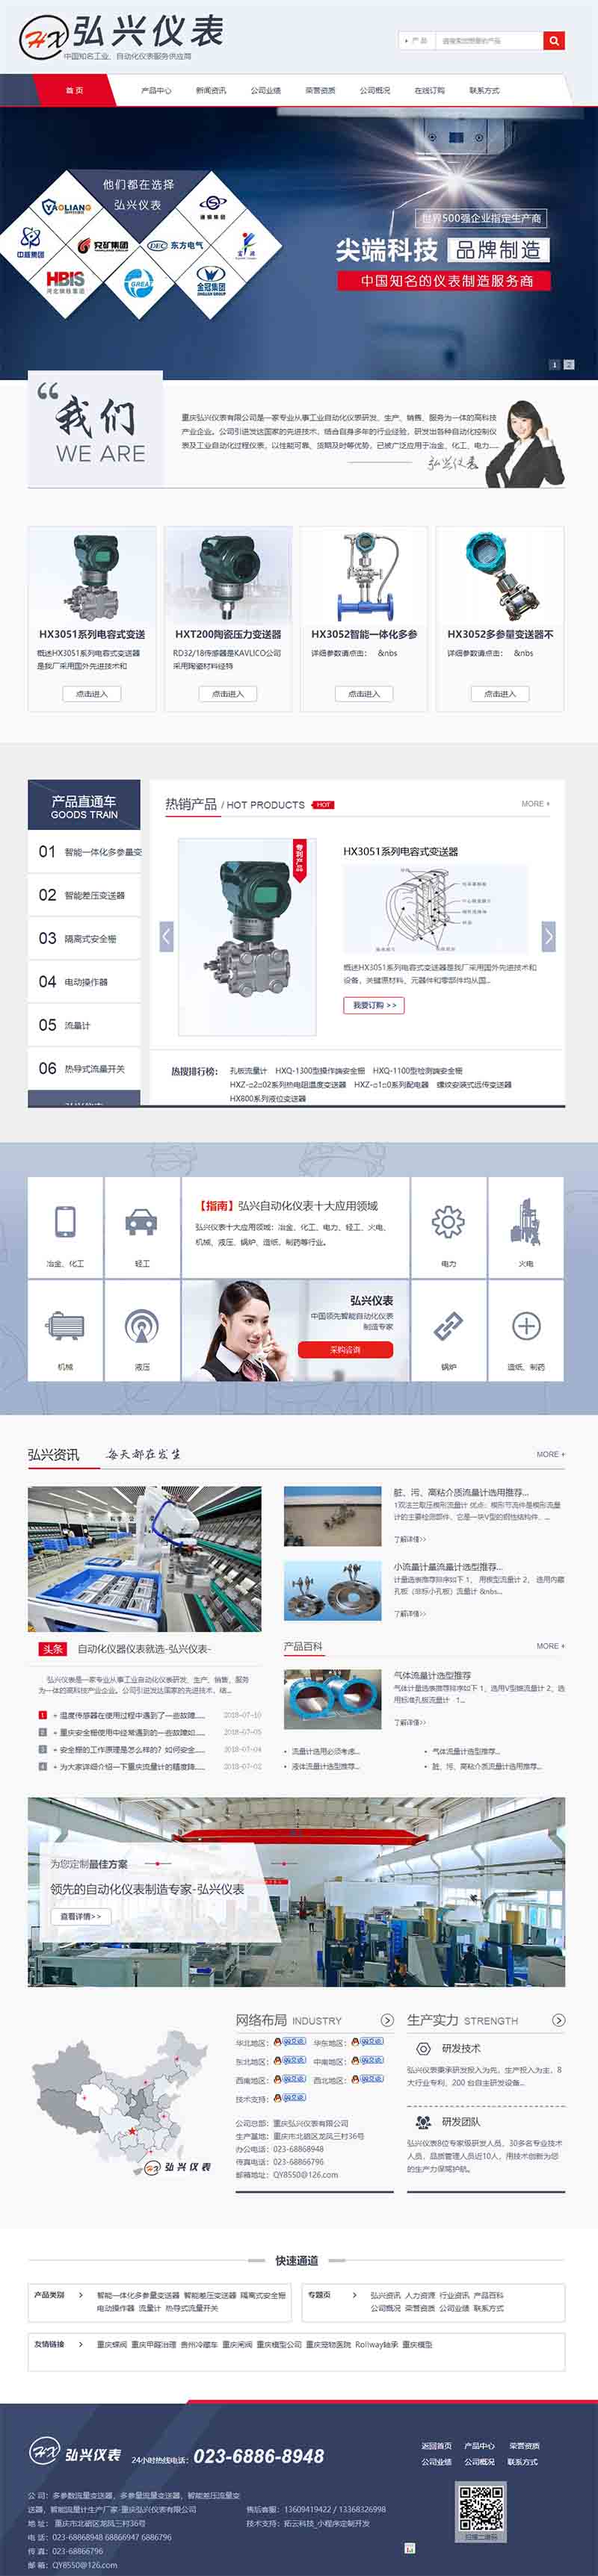 重庆弘兴仪表有限公司电脑网站